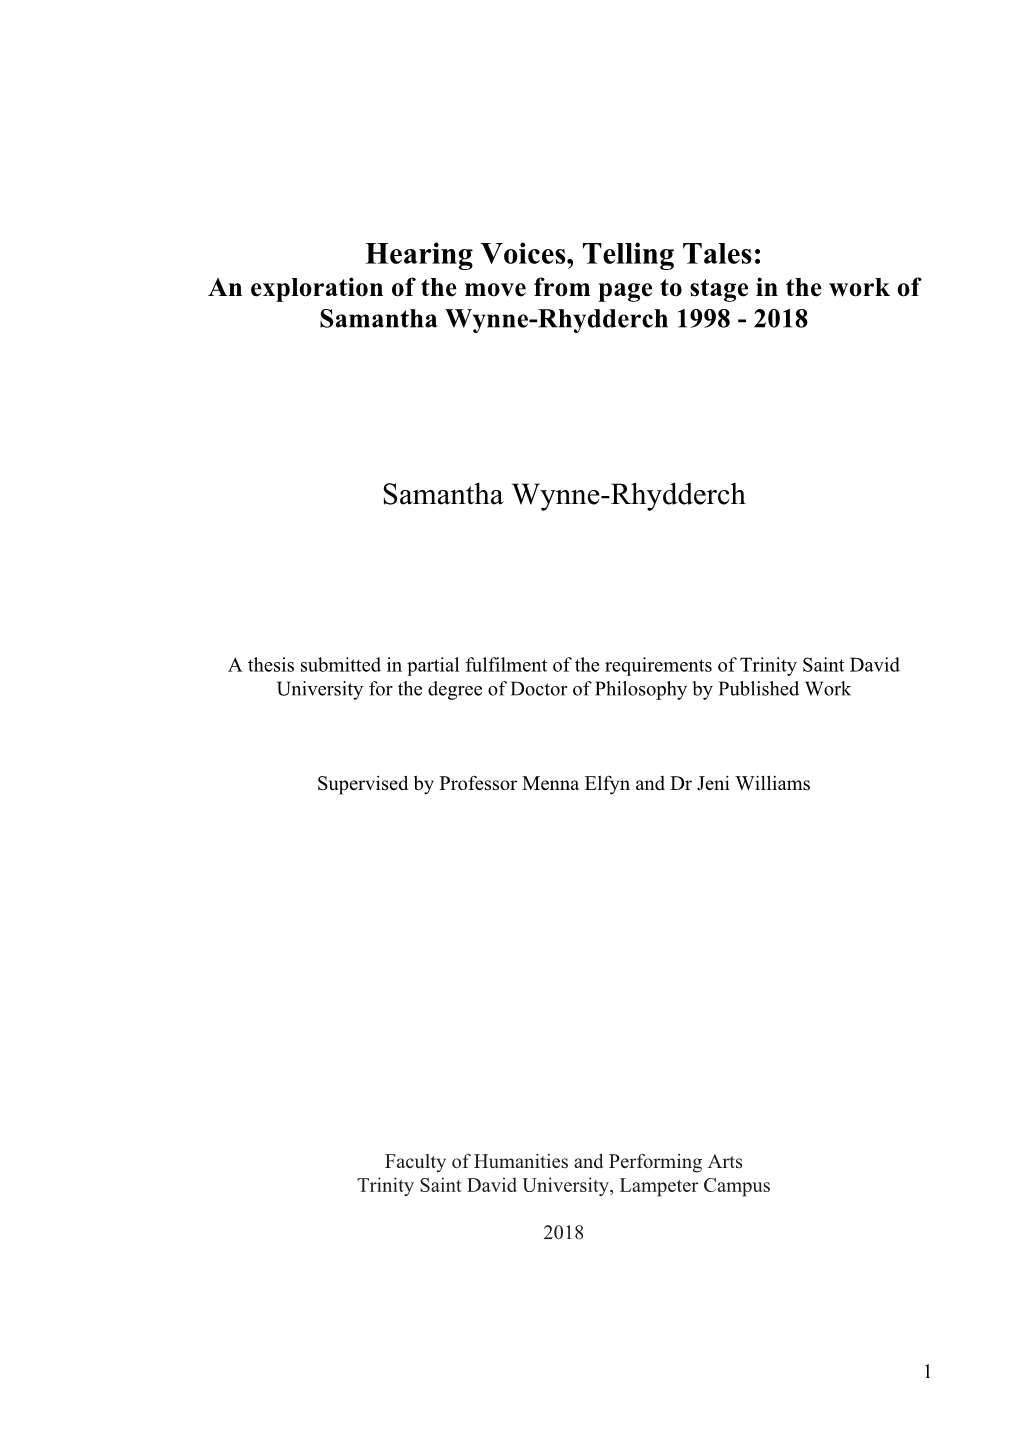 Hearing Voices, Telling Tales: Samantha Wynne-Rhydderch